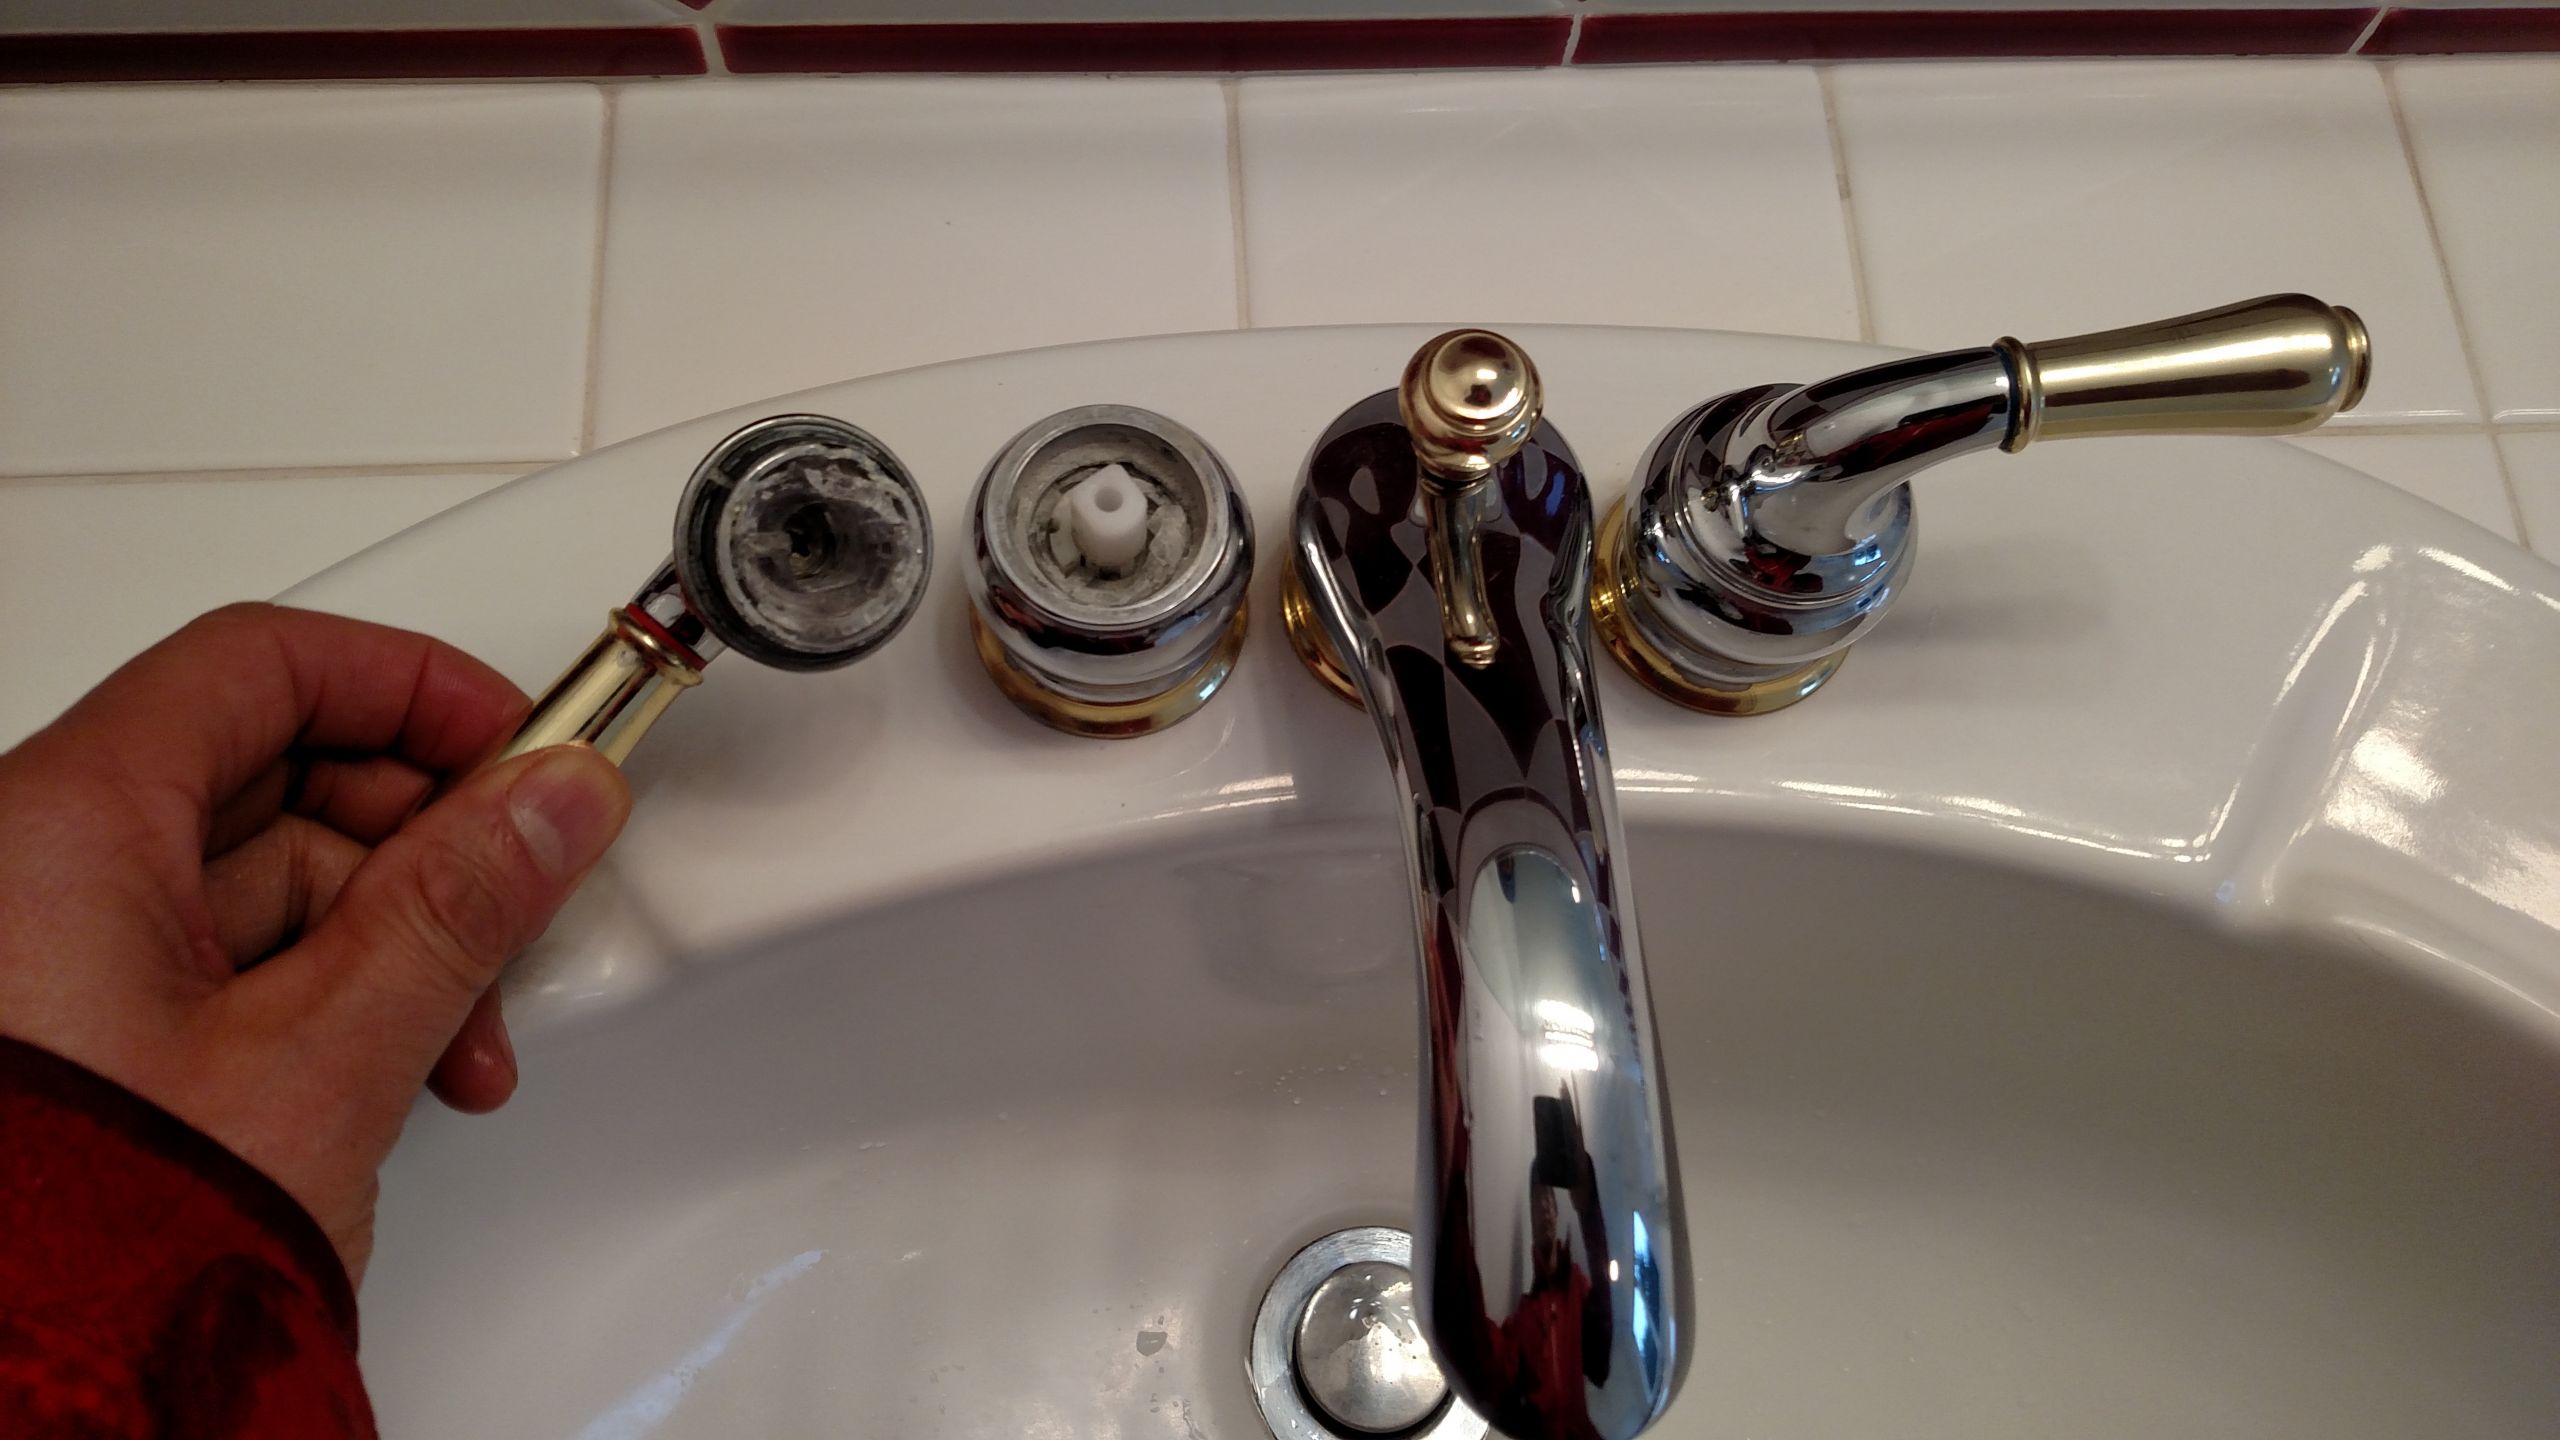 Moen Bathroom Faucet Removal Elegant Mokleis February 2019 Of Moen Bathroom Faucet Removal Scaled 